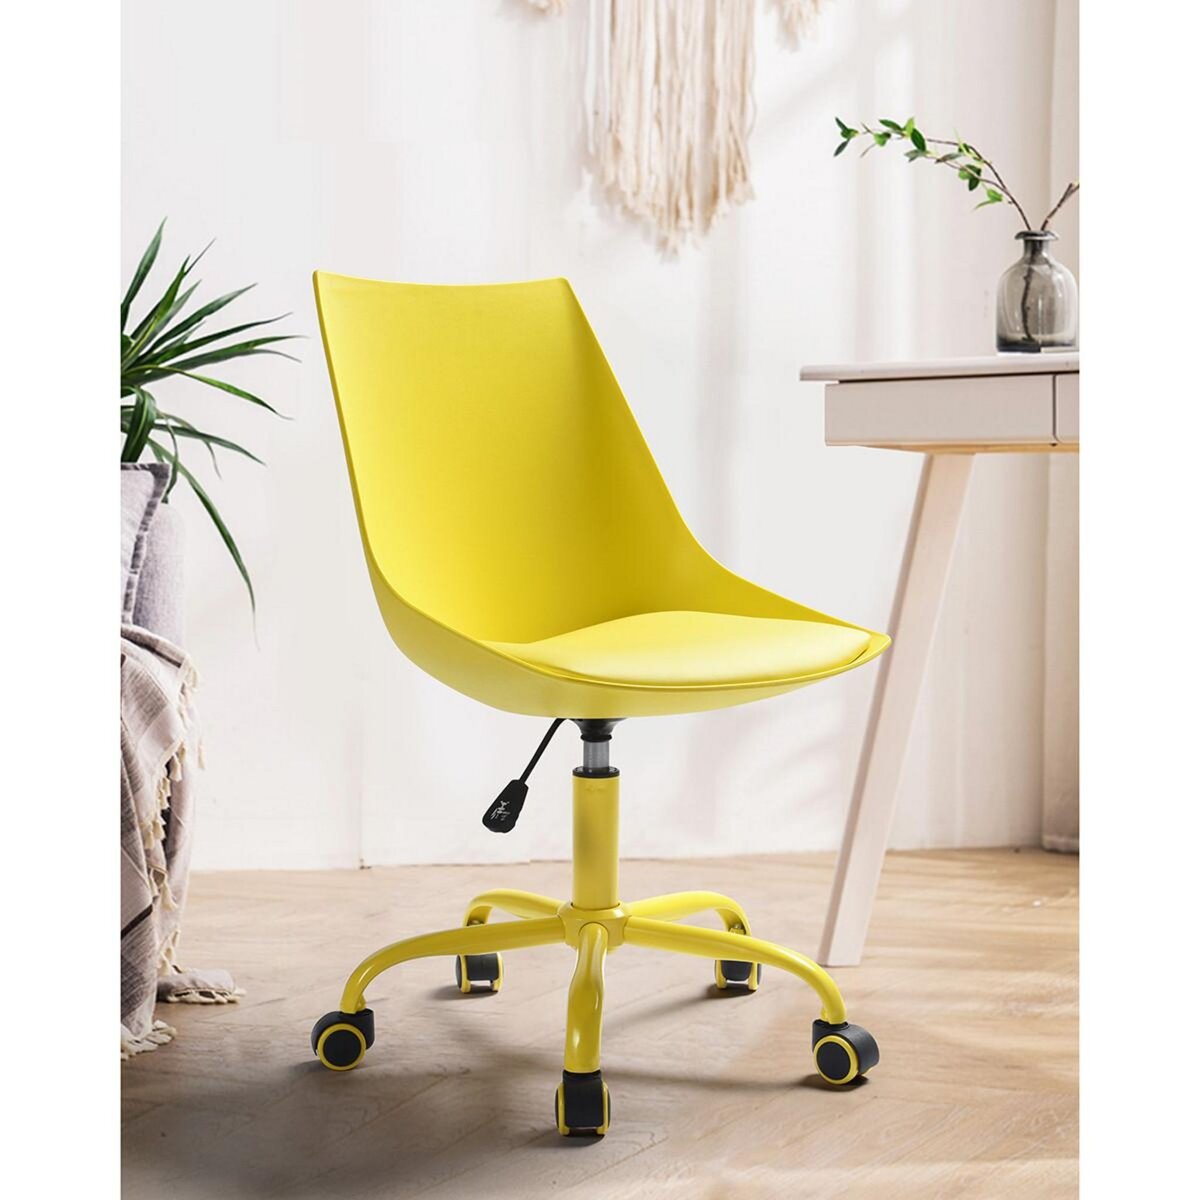 URBAN MEUBLE Chaise de bureau scandinave jaune pivotant réglable hauteur  d'assise 46-55cm pas cher 